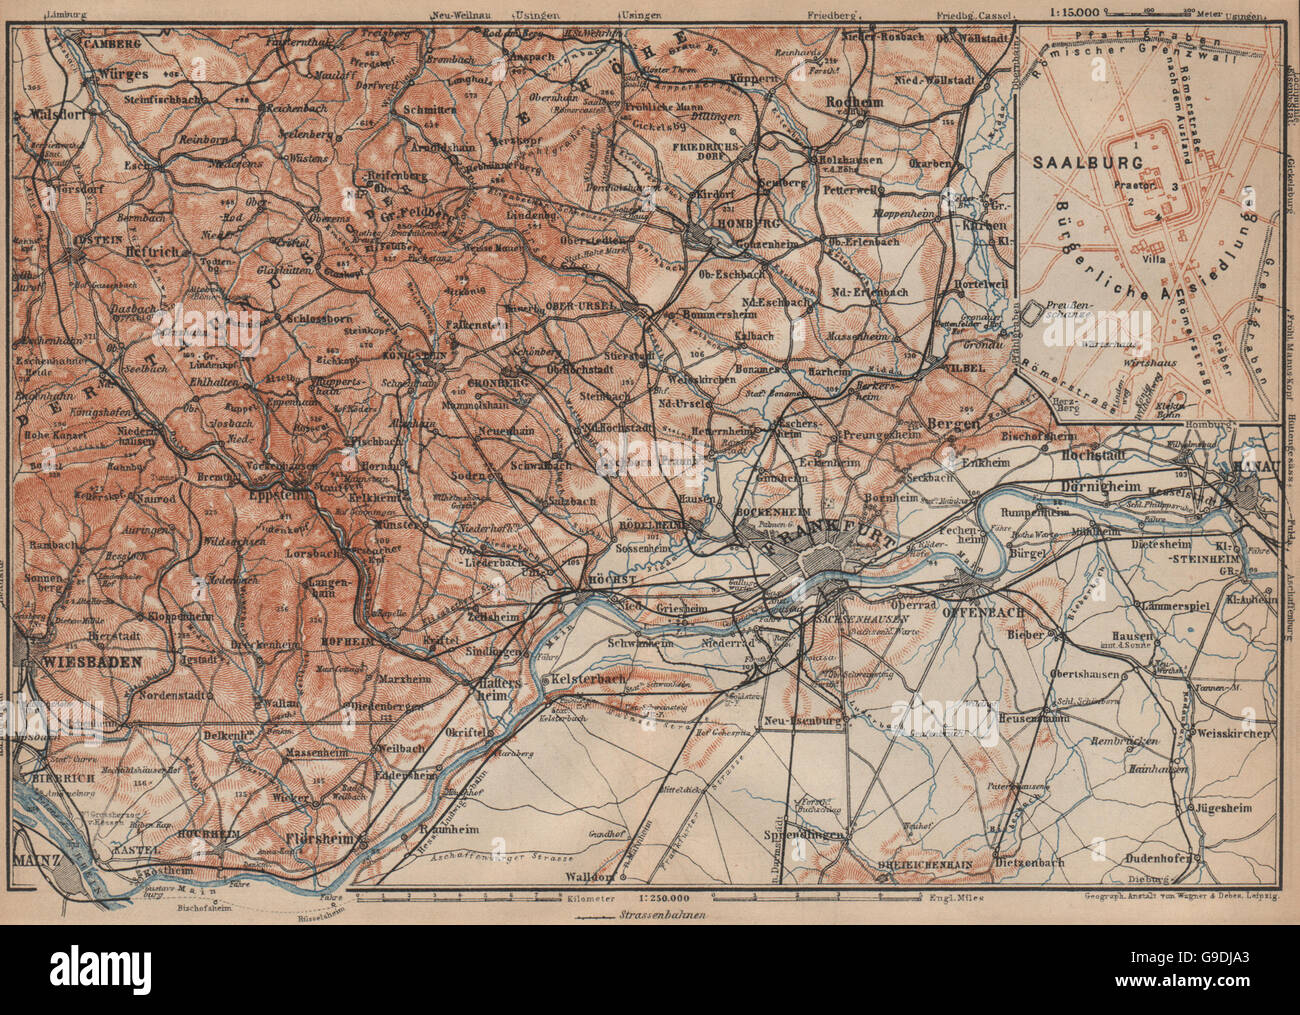 TAUNUS-Berge. Wiesbaden-Frankfurt Am Main-Hanau. Deutschland Karte, Karte von 1903 Stockfoto